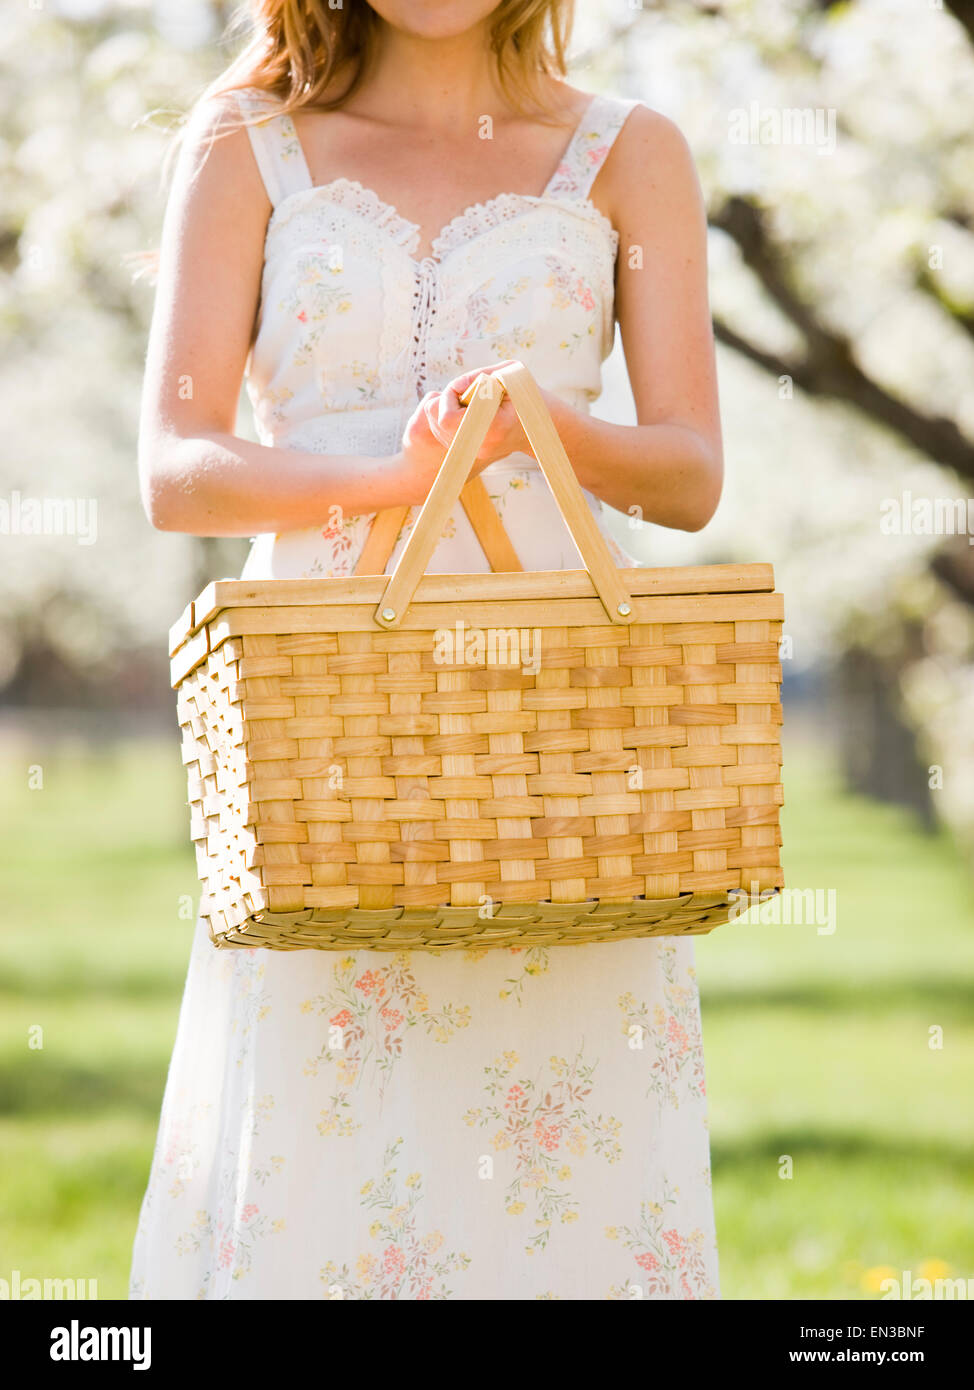 Ragazza in un abito bianco tenendo un cestino da pic-nic Foto Stock